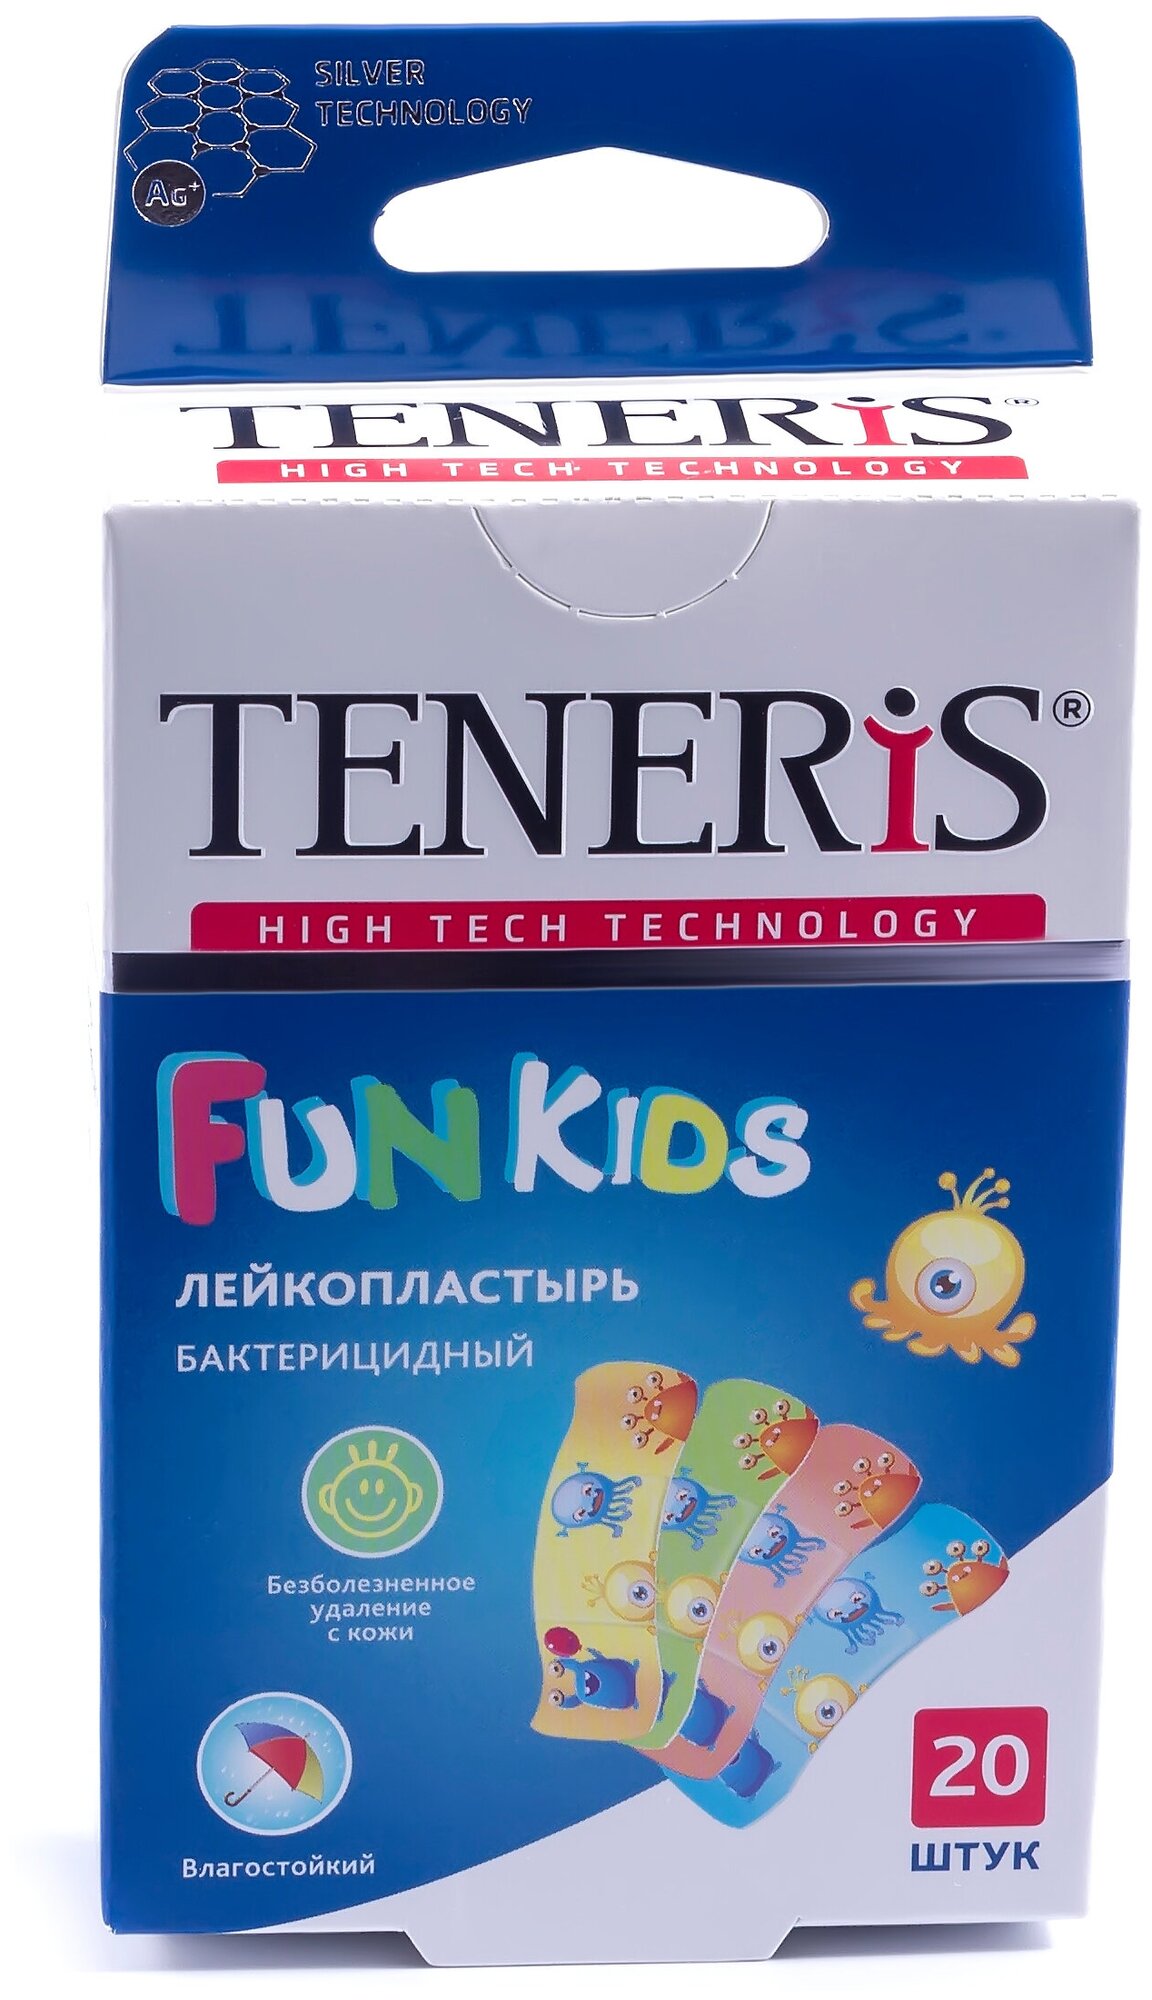  TENERIS FUN KIDS           20 